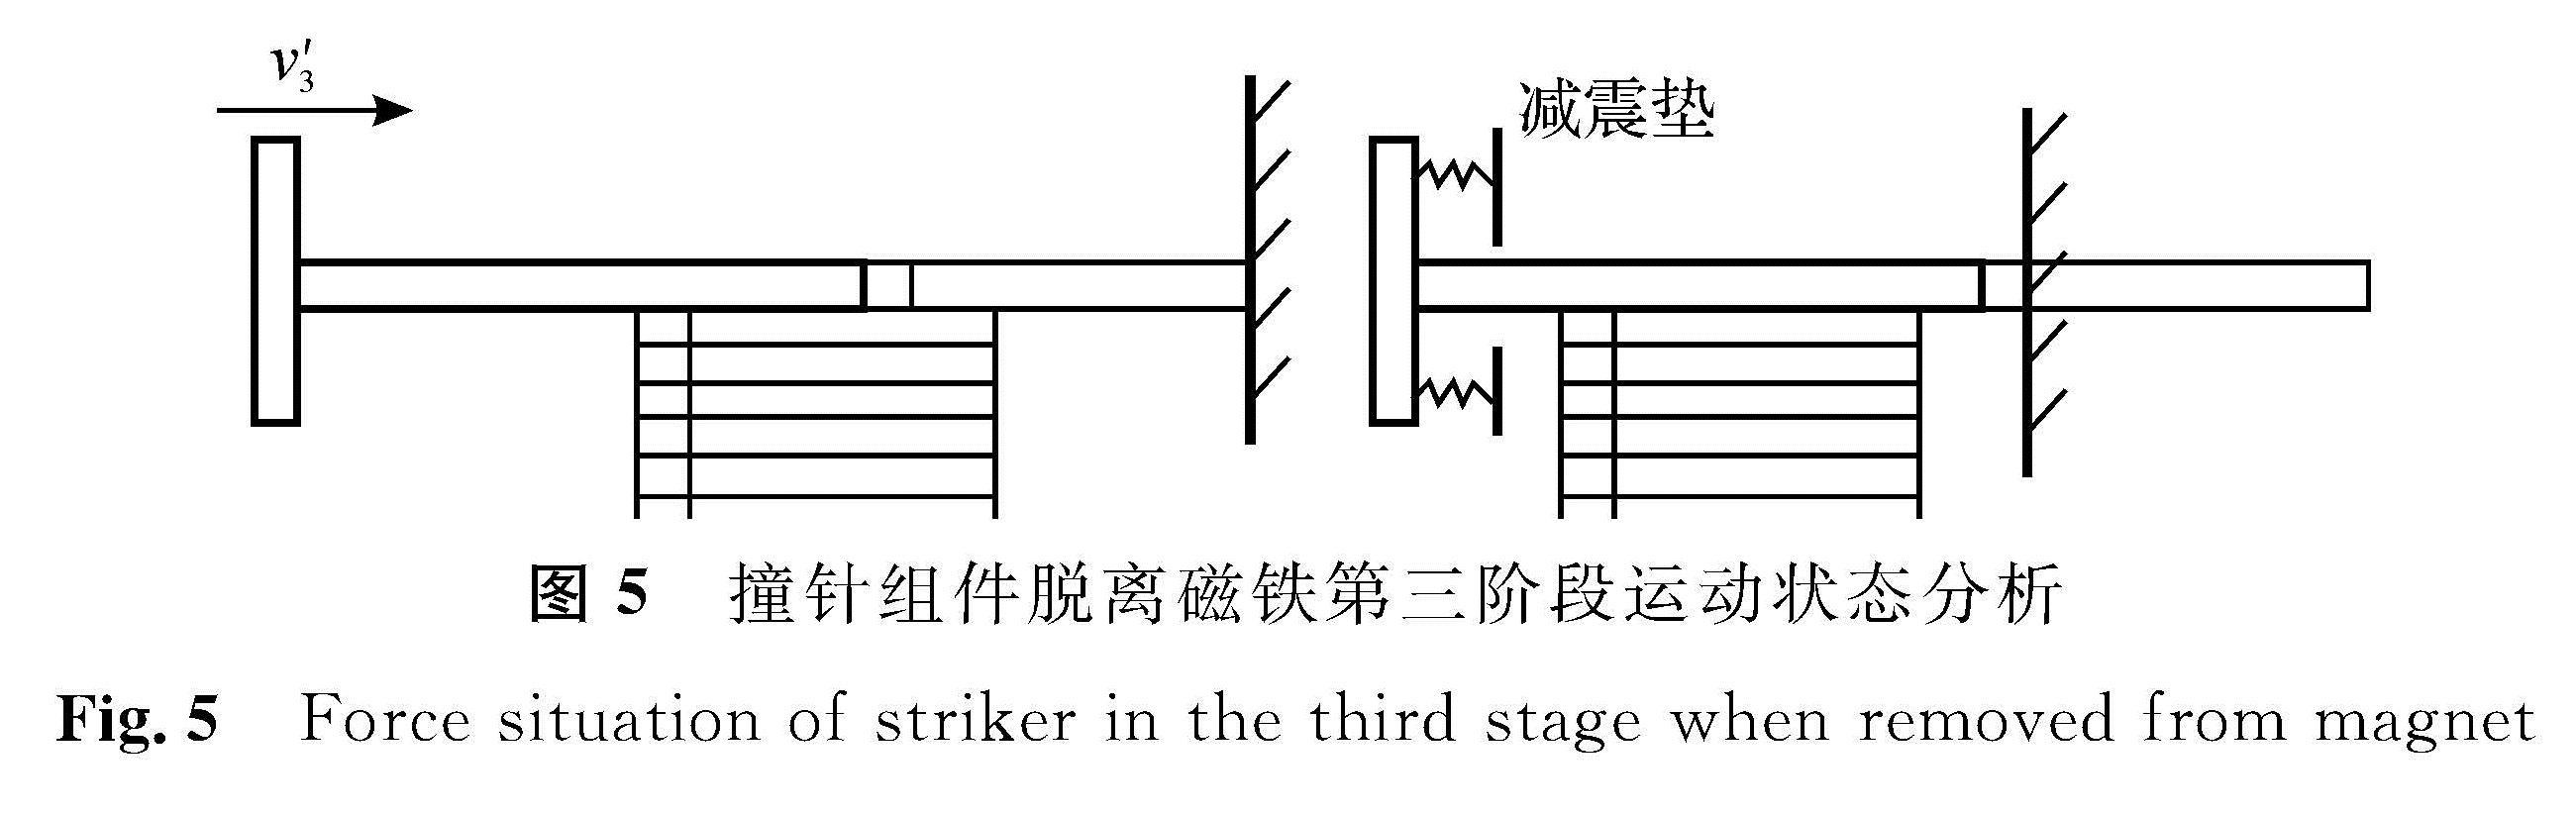 图5 撞针组件脱离磁铁第三阶段运动状态分析<br/>Fig.5 Force situation of striker in the third stage when removed from magnet